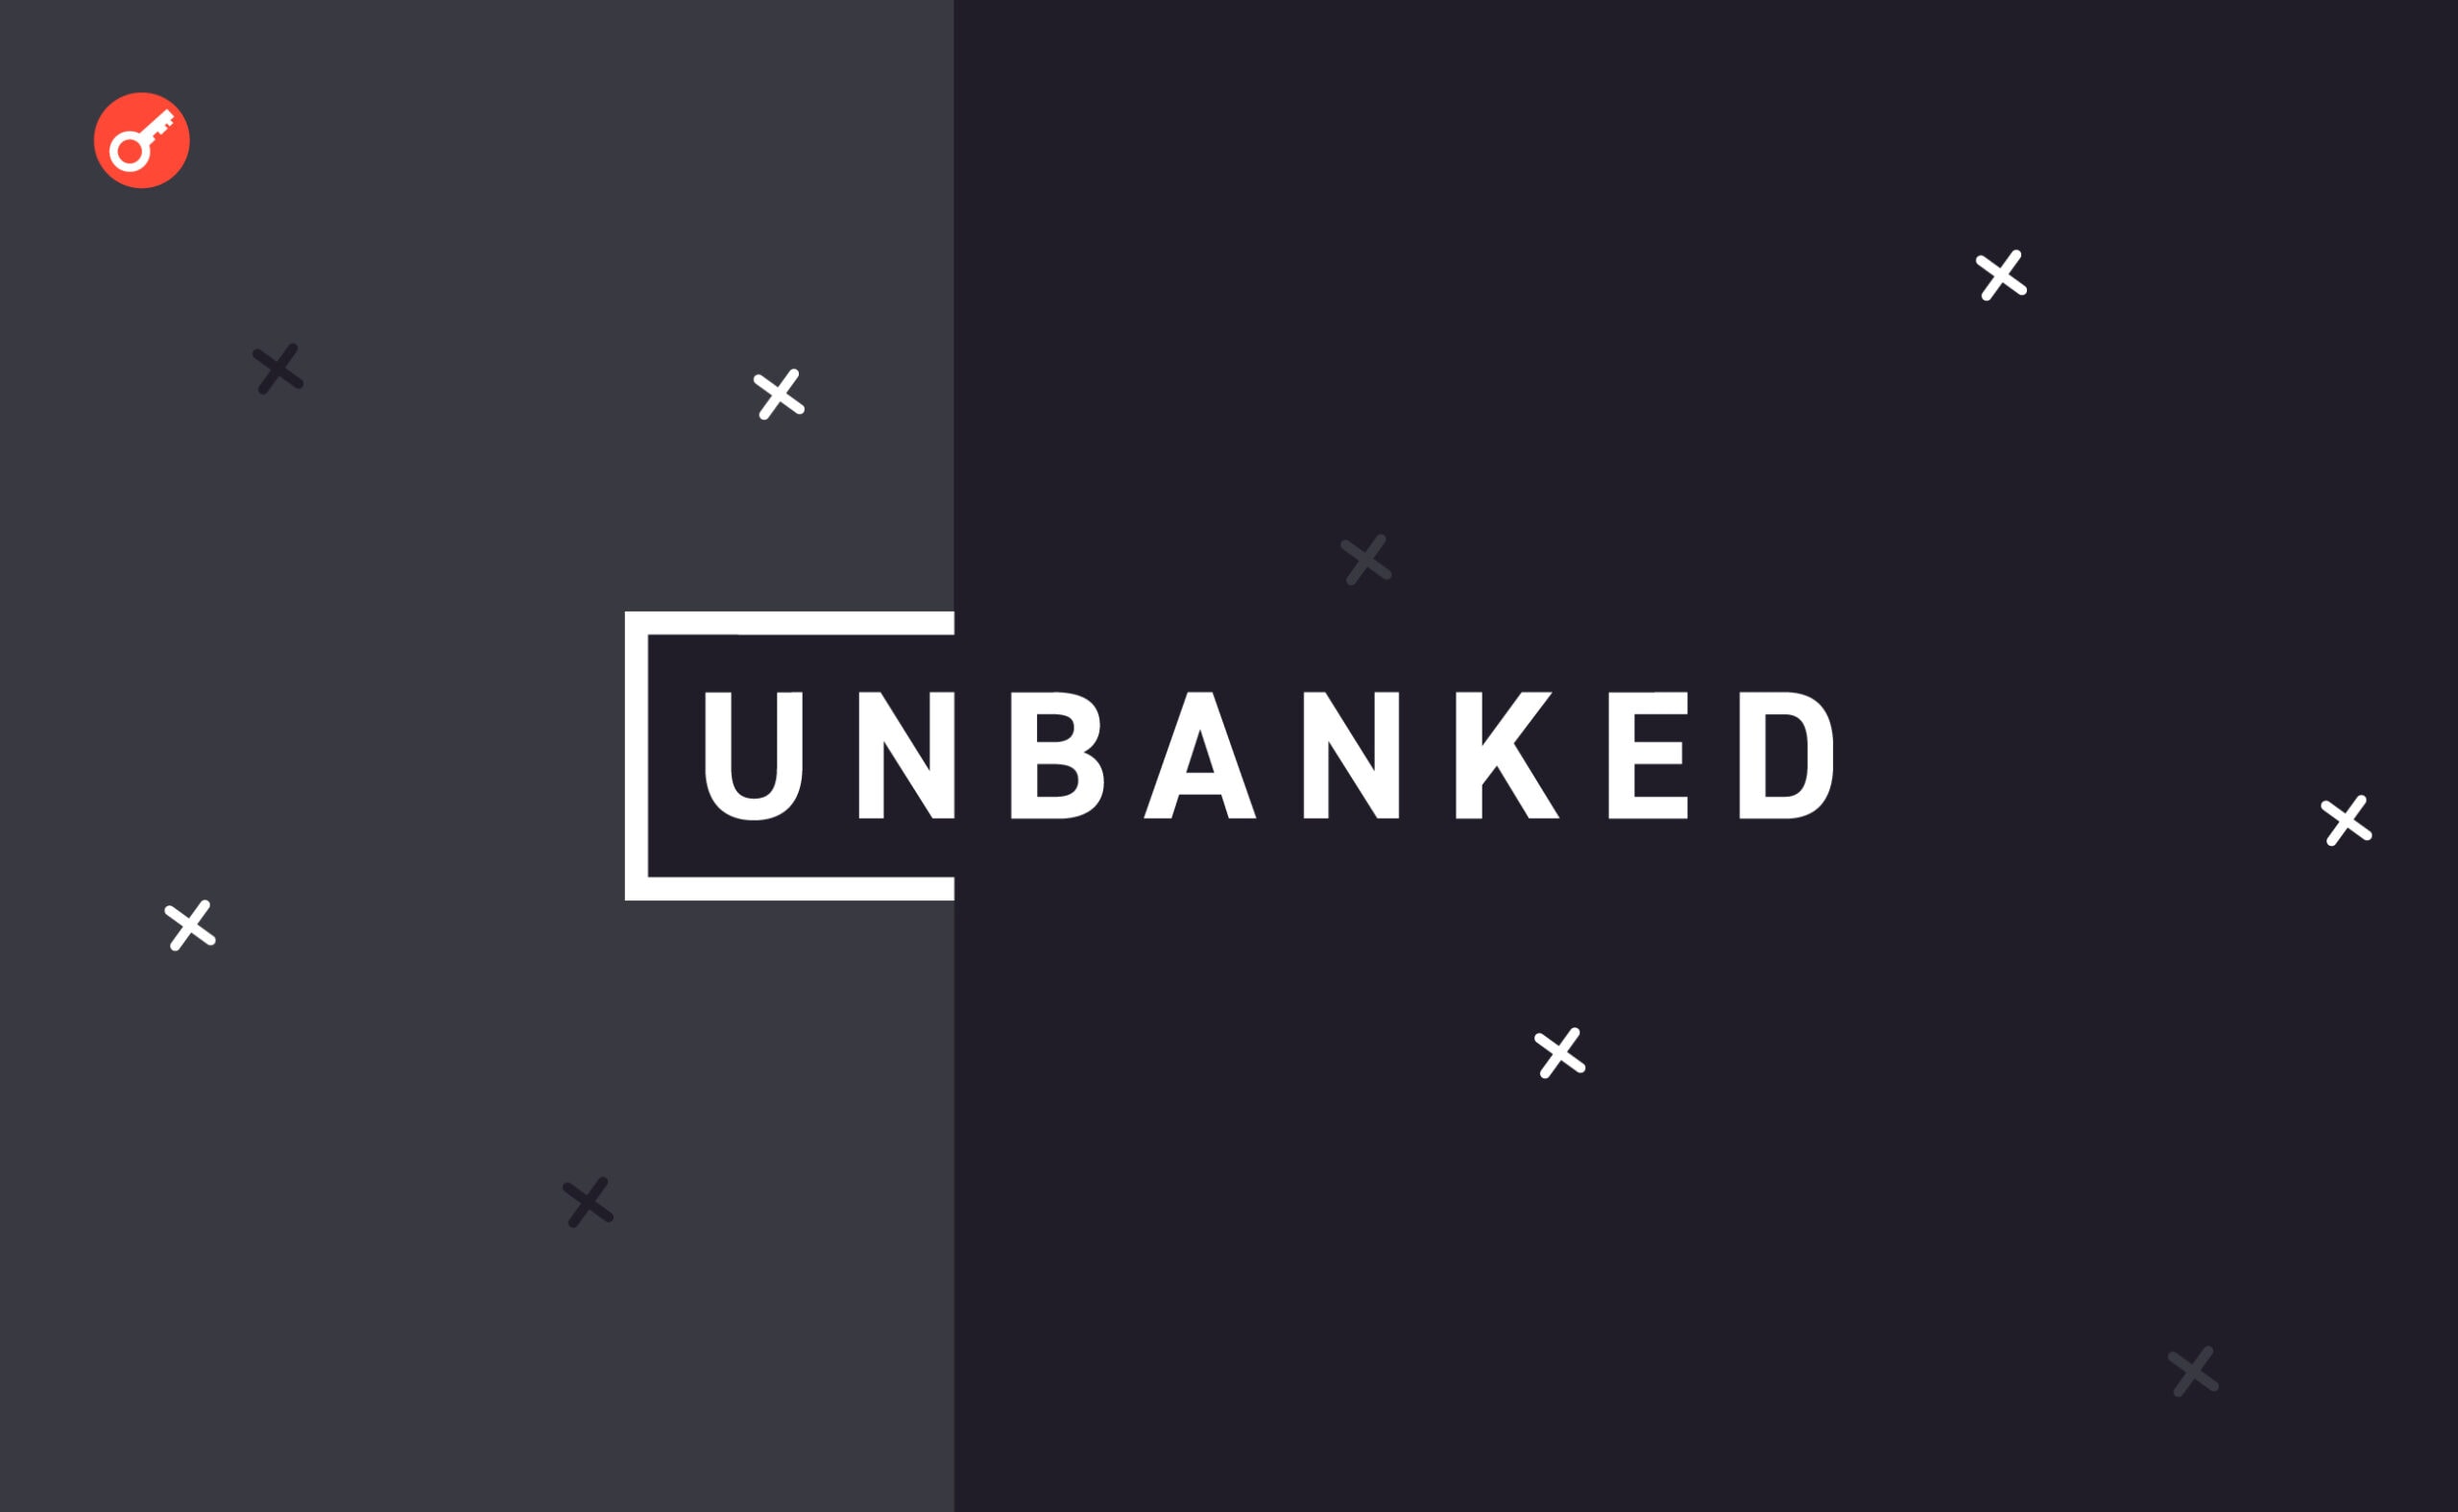 Firma kryptowalutowa Unbanked zostaje zamknięta z powodu działań regulacyjnych. Główny kolaż wiadomości.